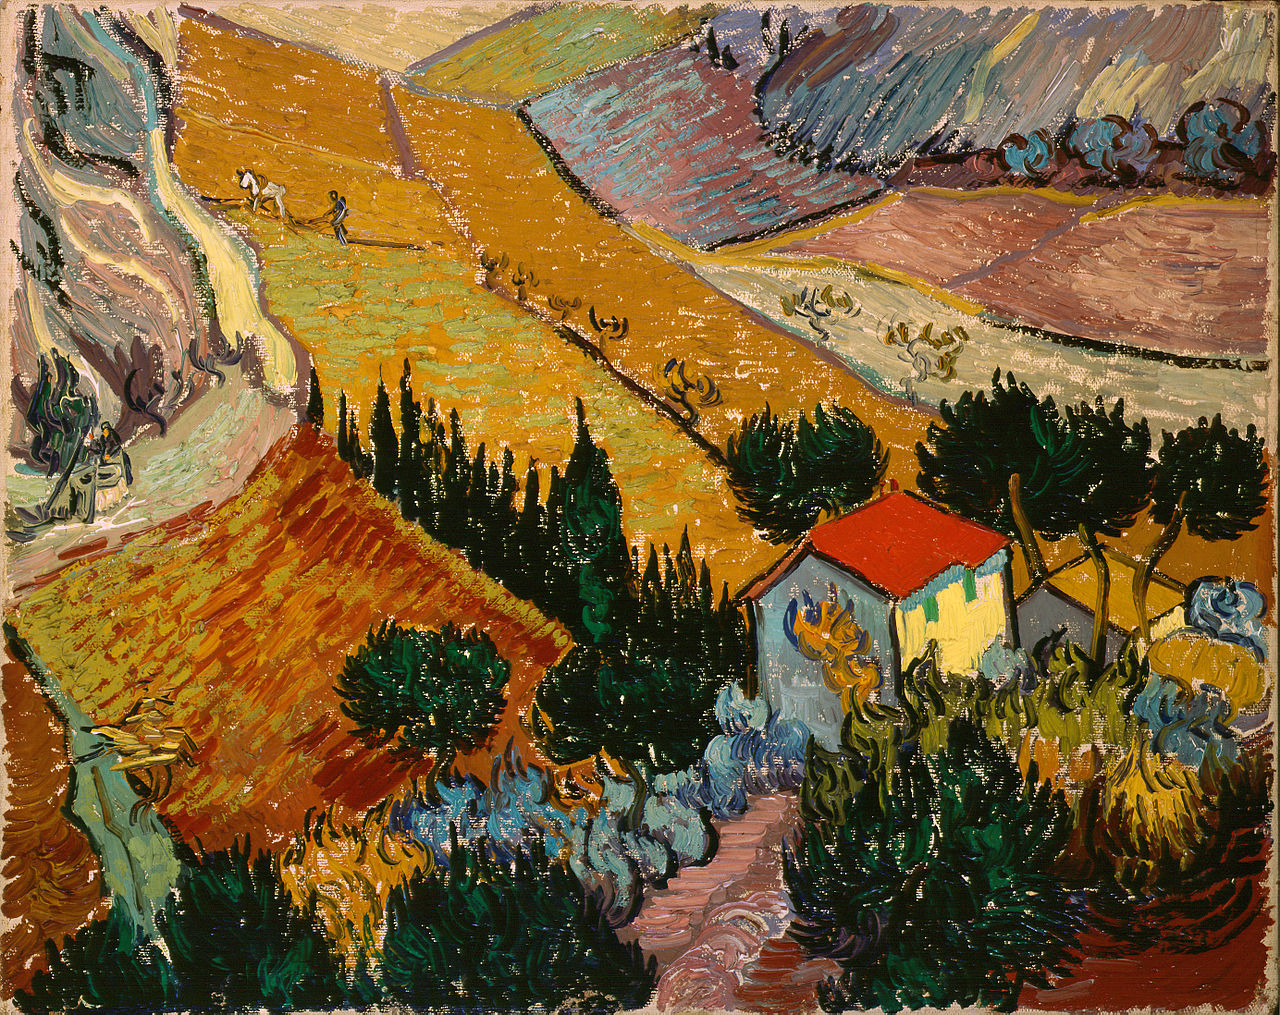 绘有房子和农夫的风景画 by 文森· 威廉·梵高 - 1889 - 33 x 41.4 cm 艾尔米塔什博物馆